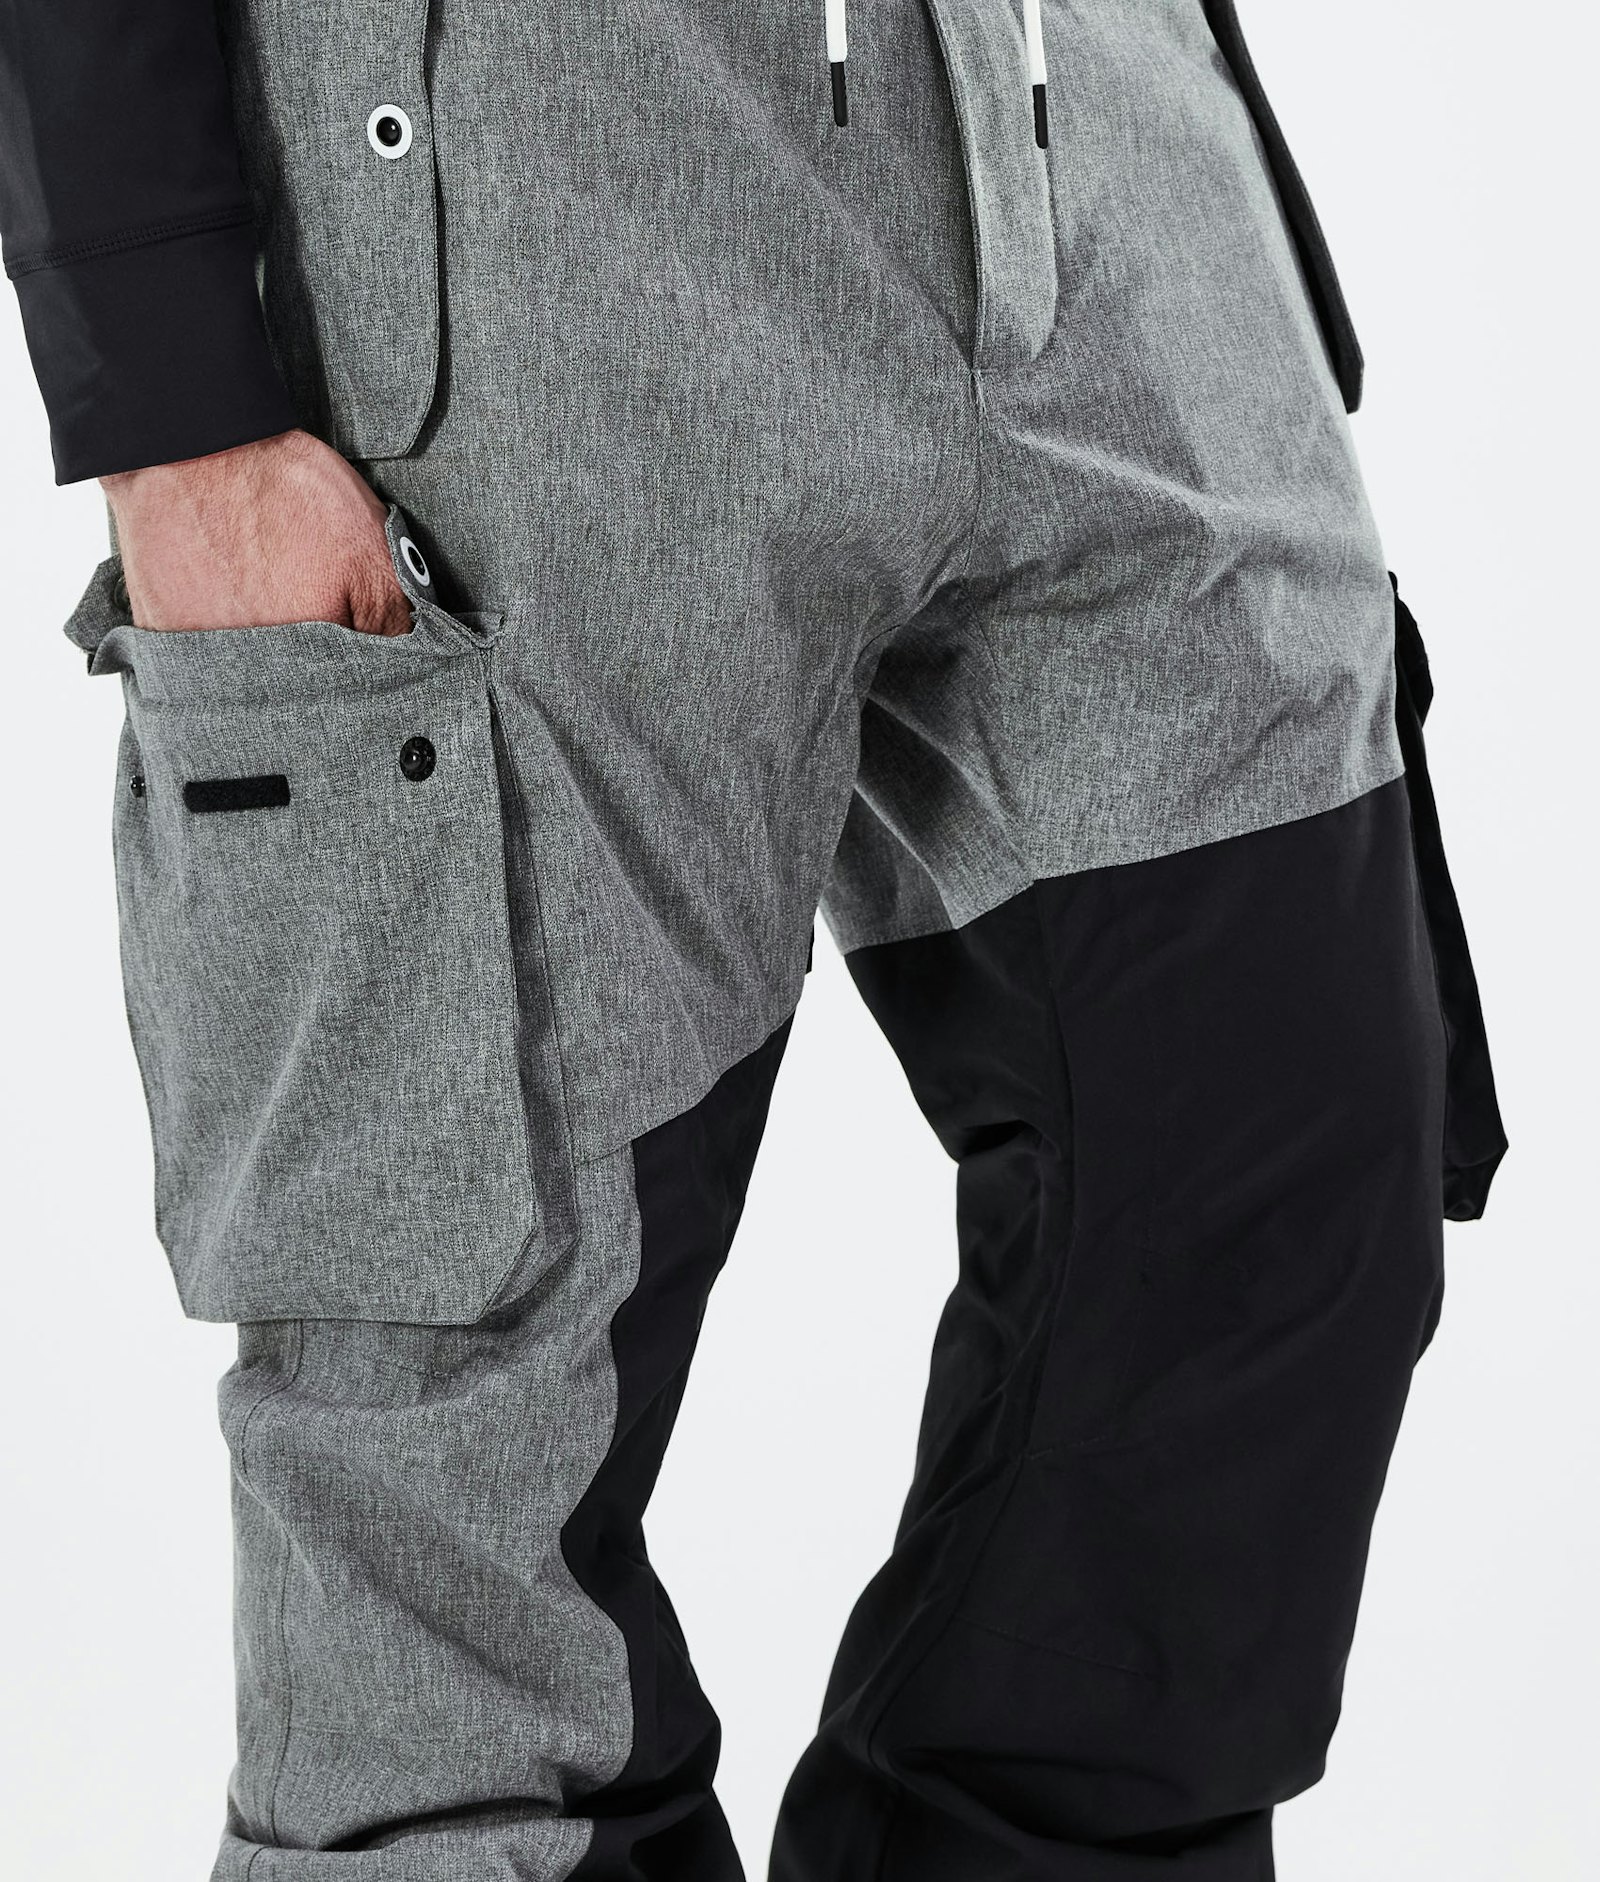 Adept 2020 Pantalon de Ski Homme Grey Melange/Black